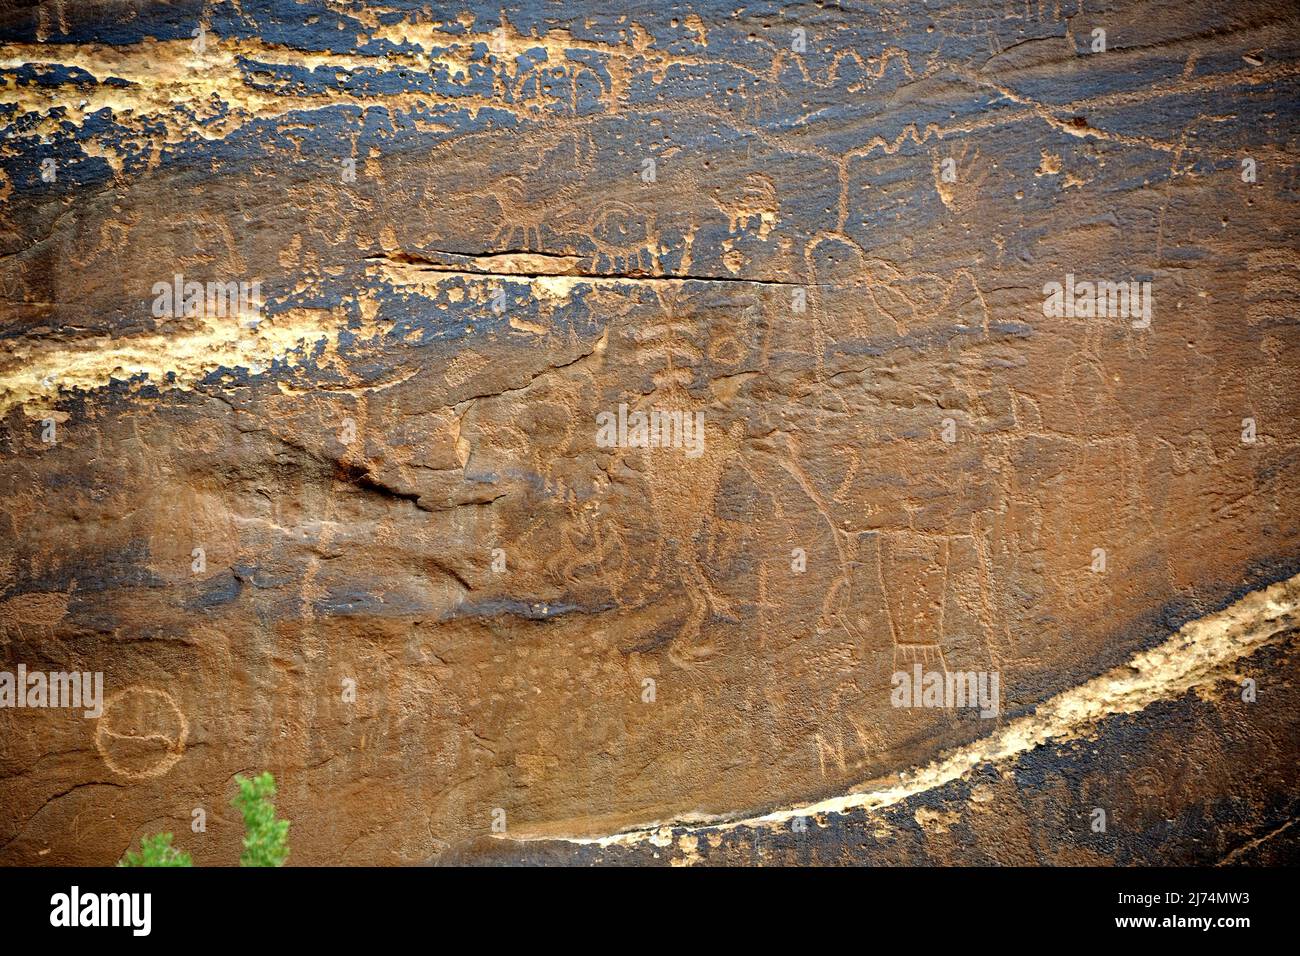 Peintures rupestres des Amérindiens, environ 3000 ans, Sand Island près de Bluff, États-Unis, Utah Banque D'Images